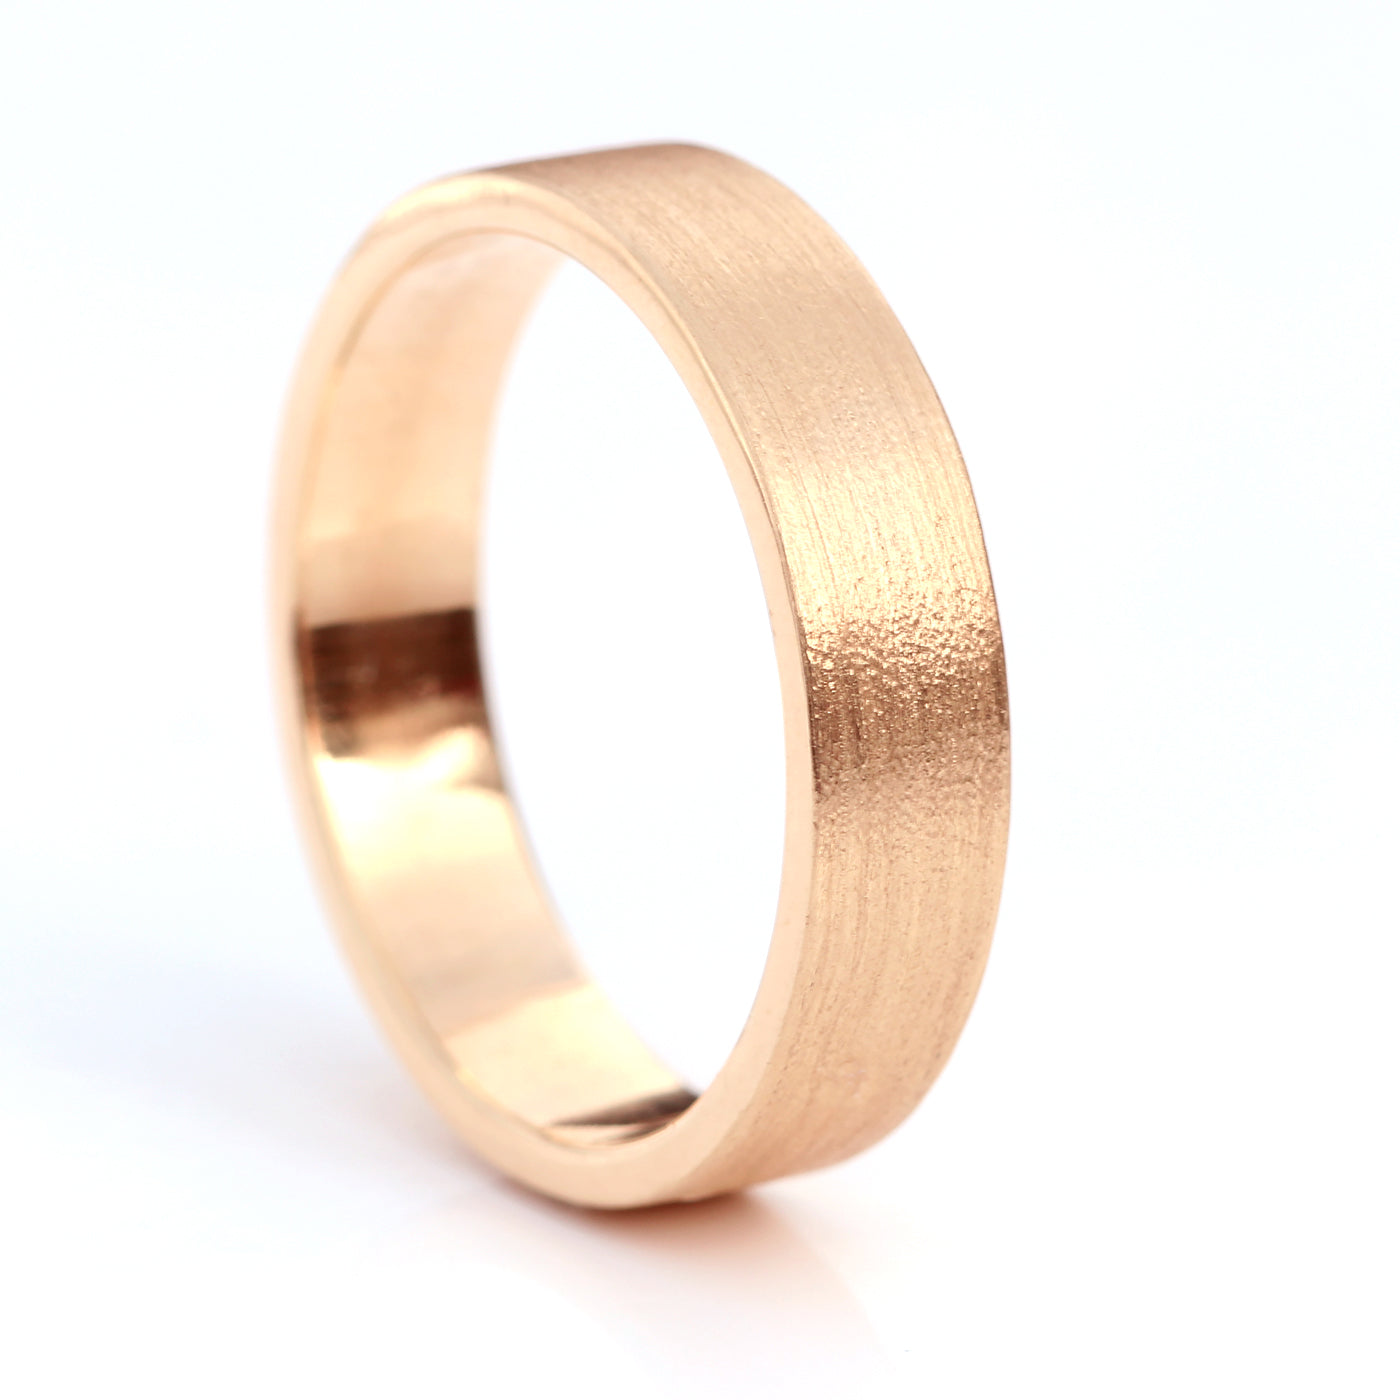 5mm flat wedding ring rose gold